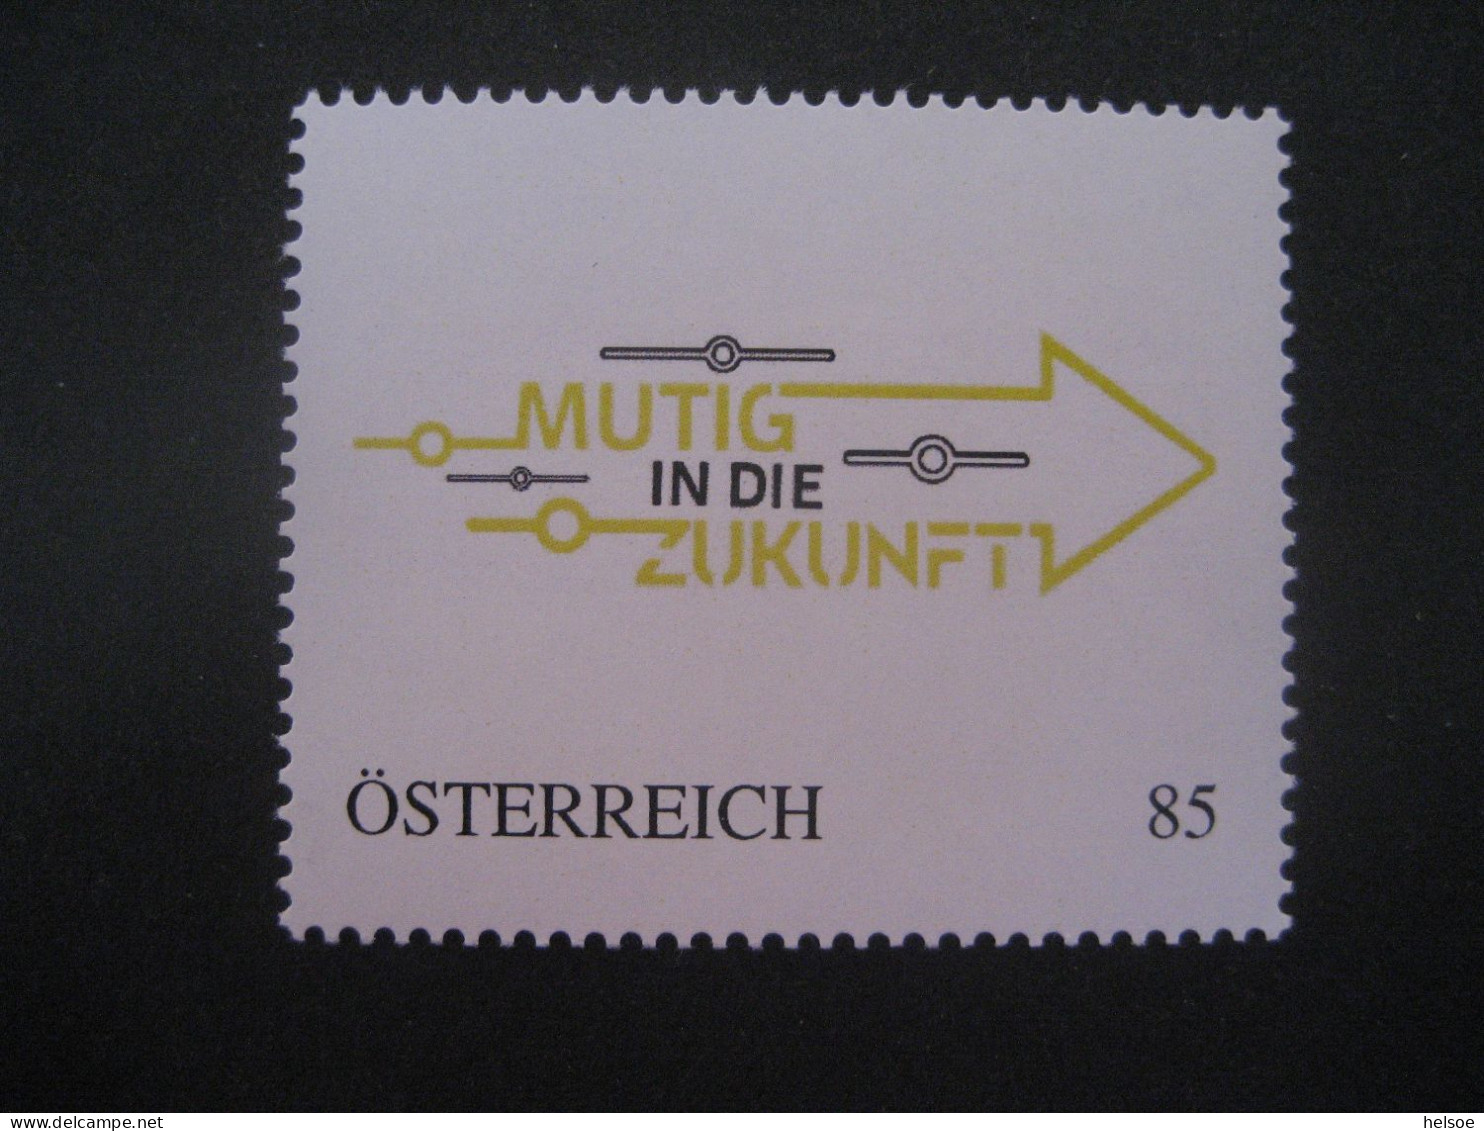 Österreich- PM 8132832, Mutig In Die Zukunft ** - Personalisierte Briefmarken